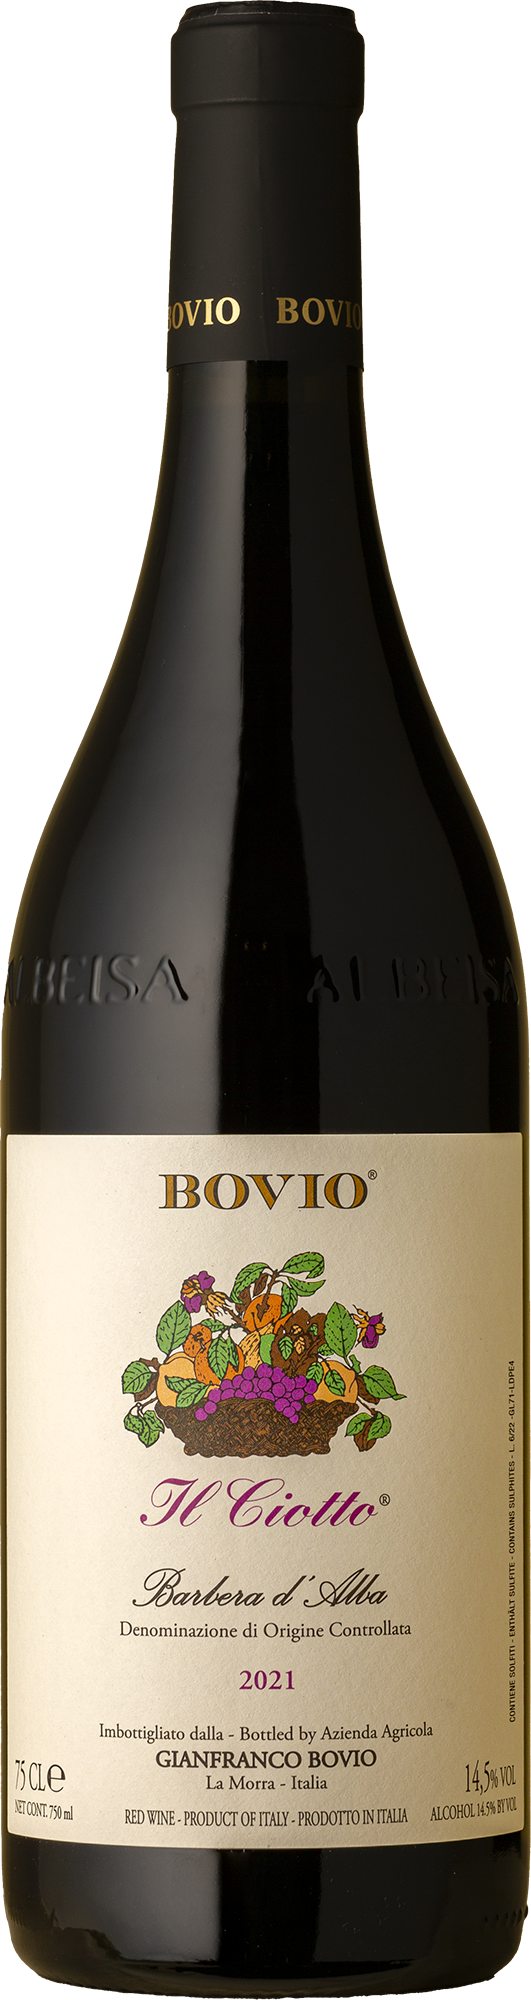 Gianfranco Bovio - II Ciotto Barbera d'Alba 2021 Red Wine